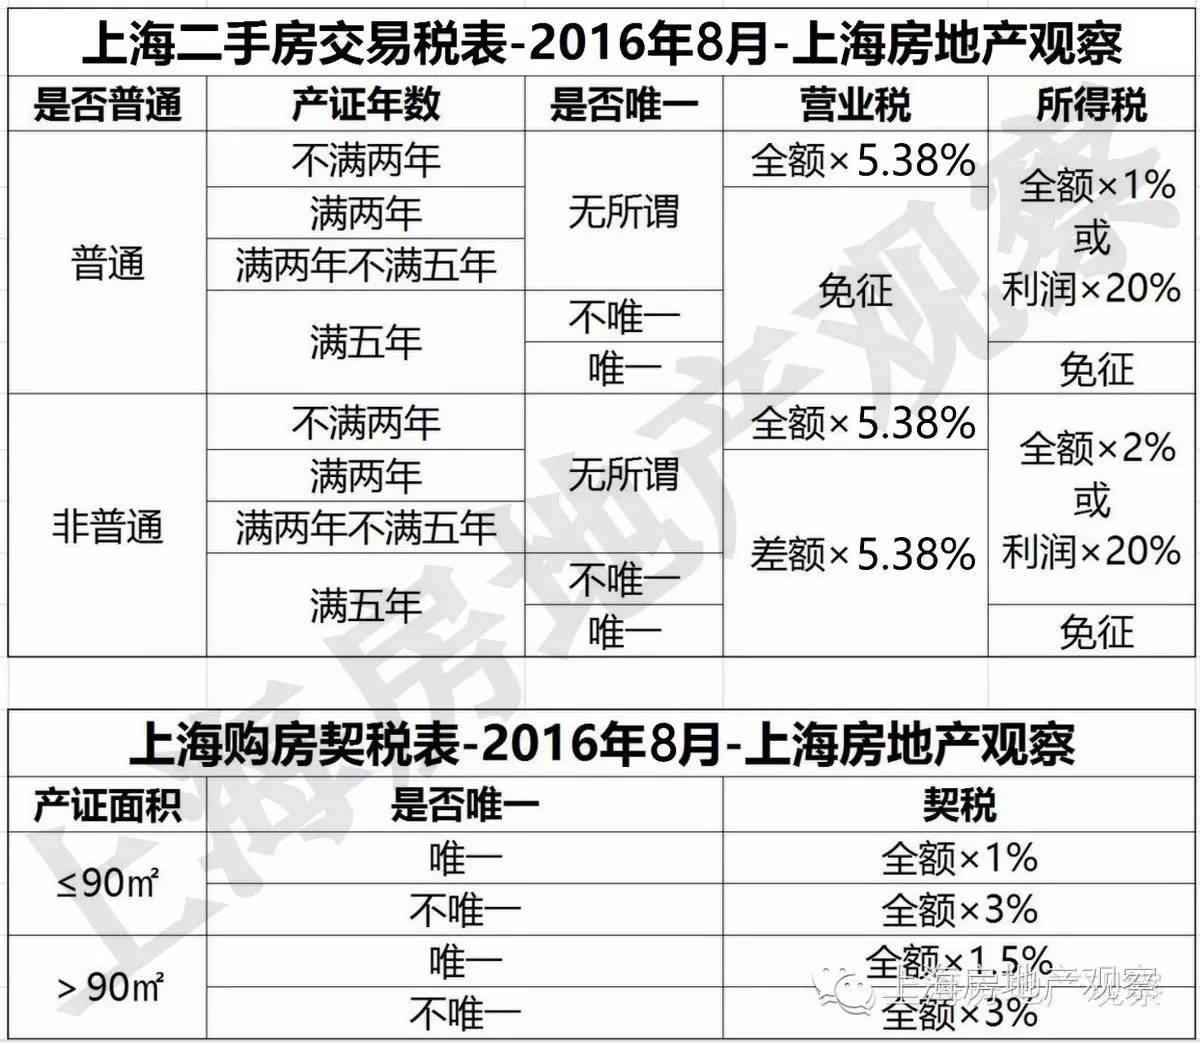 上海改善型二套房契税_上海改善型二套房 契税_2016上海改善型二套房标准